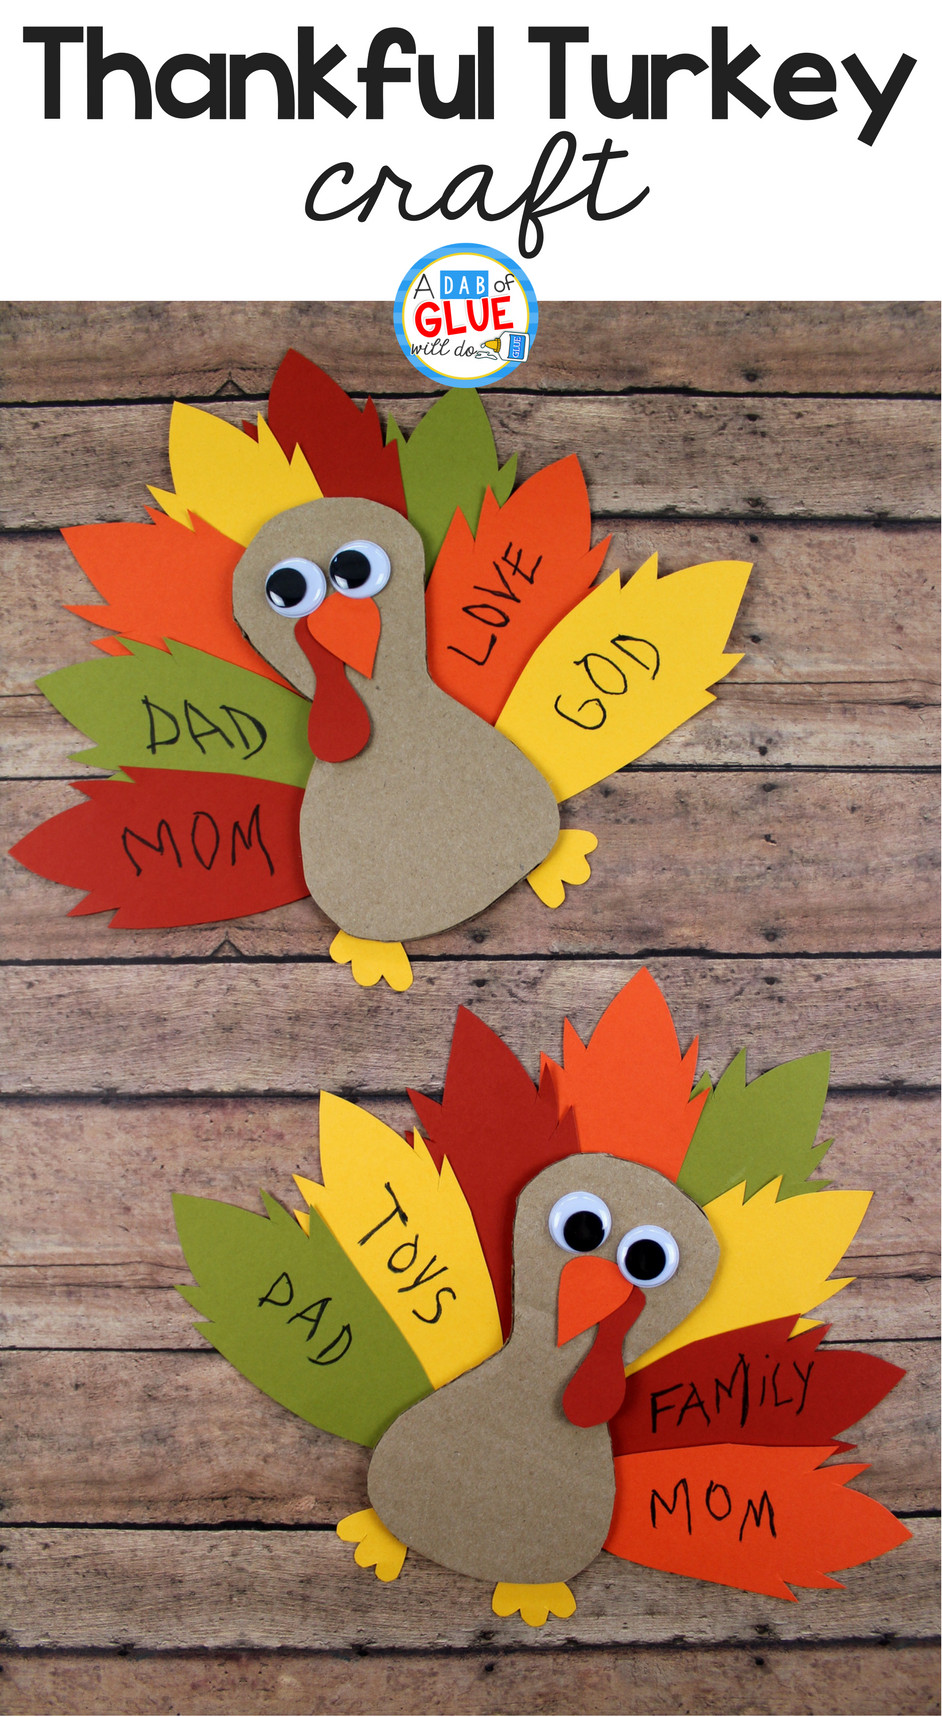 Thanksgiving Crafts For Kindergarten
 Cardboard Thankful Turkey Craft